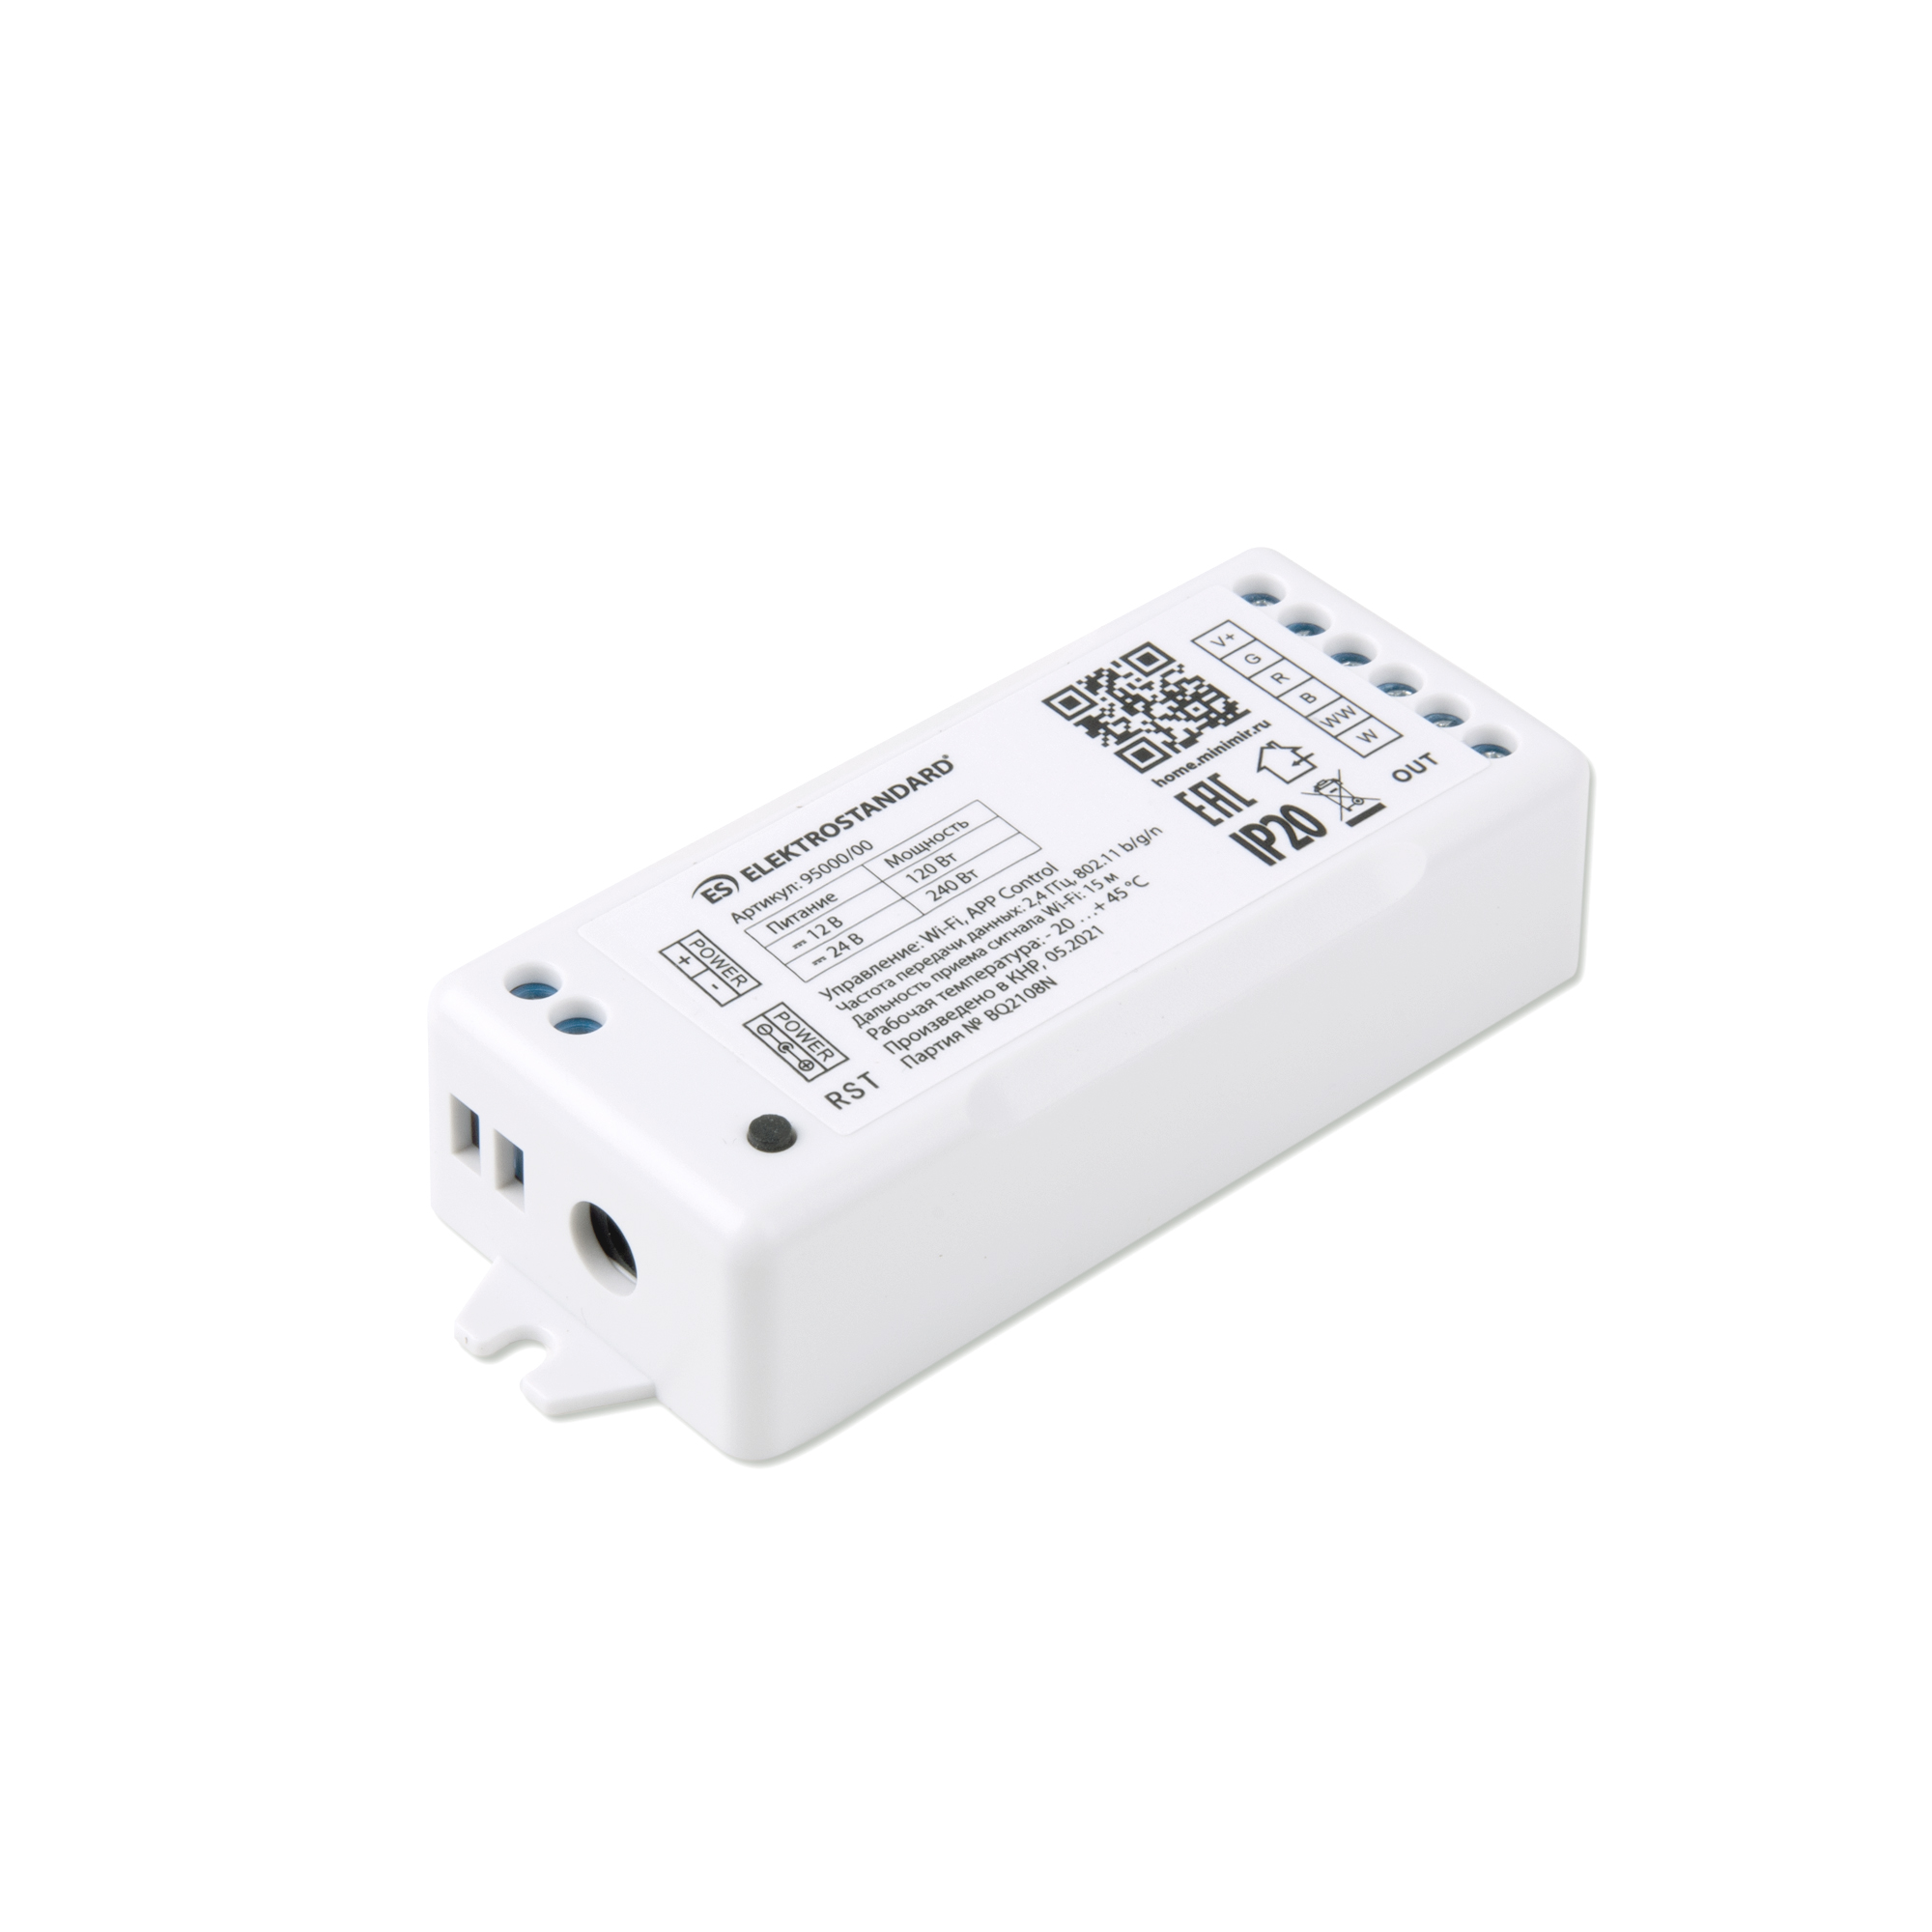 Умный контроллер для светодиодных лент RGBWW 12-24V Elektrostandard 95000/00 Minimir Home умный контроллер для светодиодных лент elektrostandard